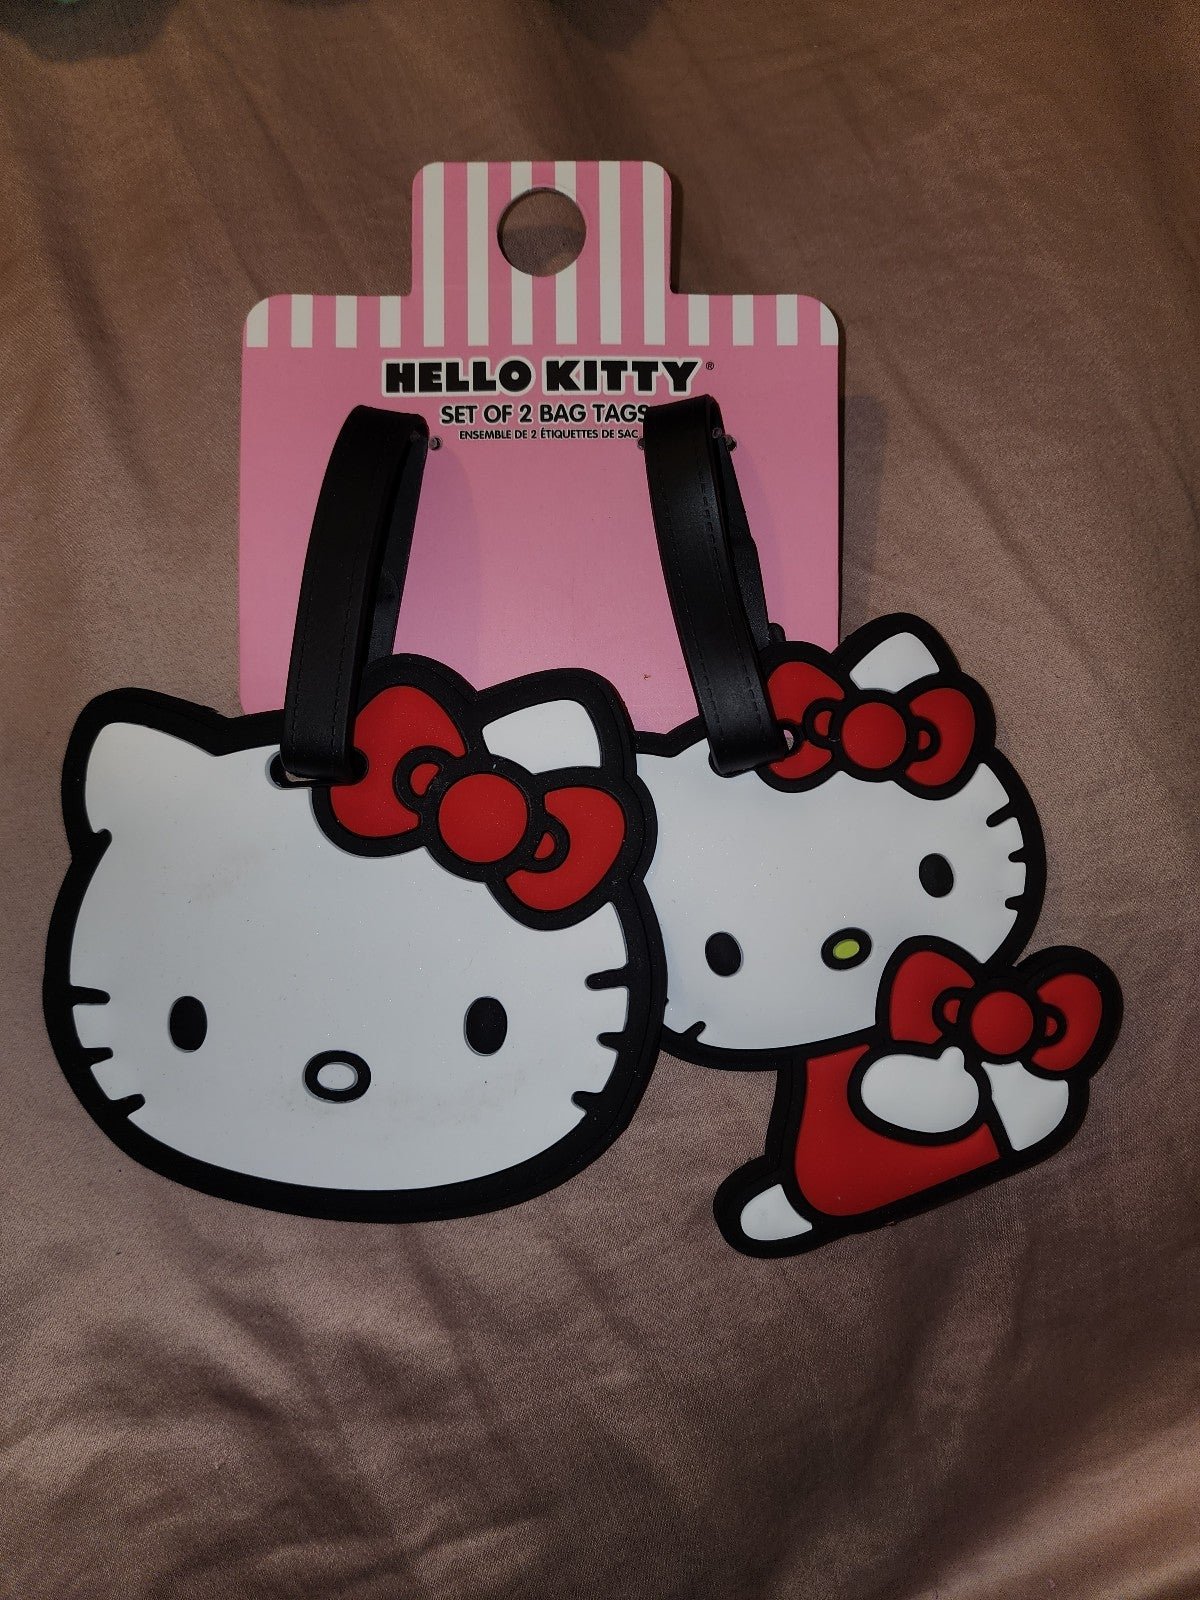 Hello Kitty Luggage Tags jedTmmB9U